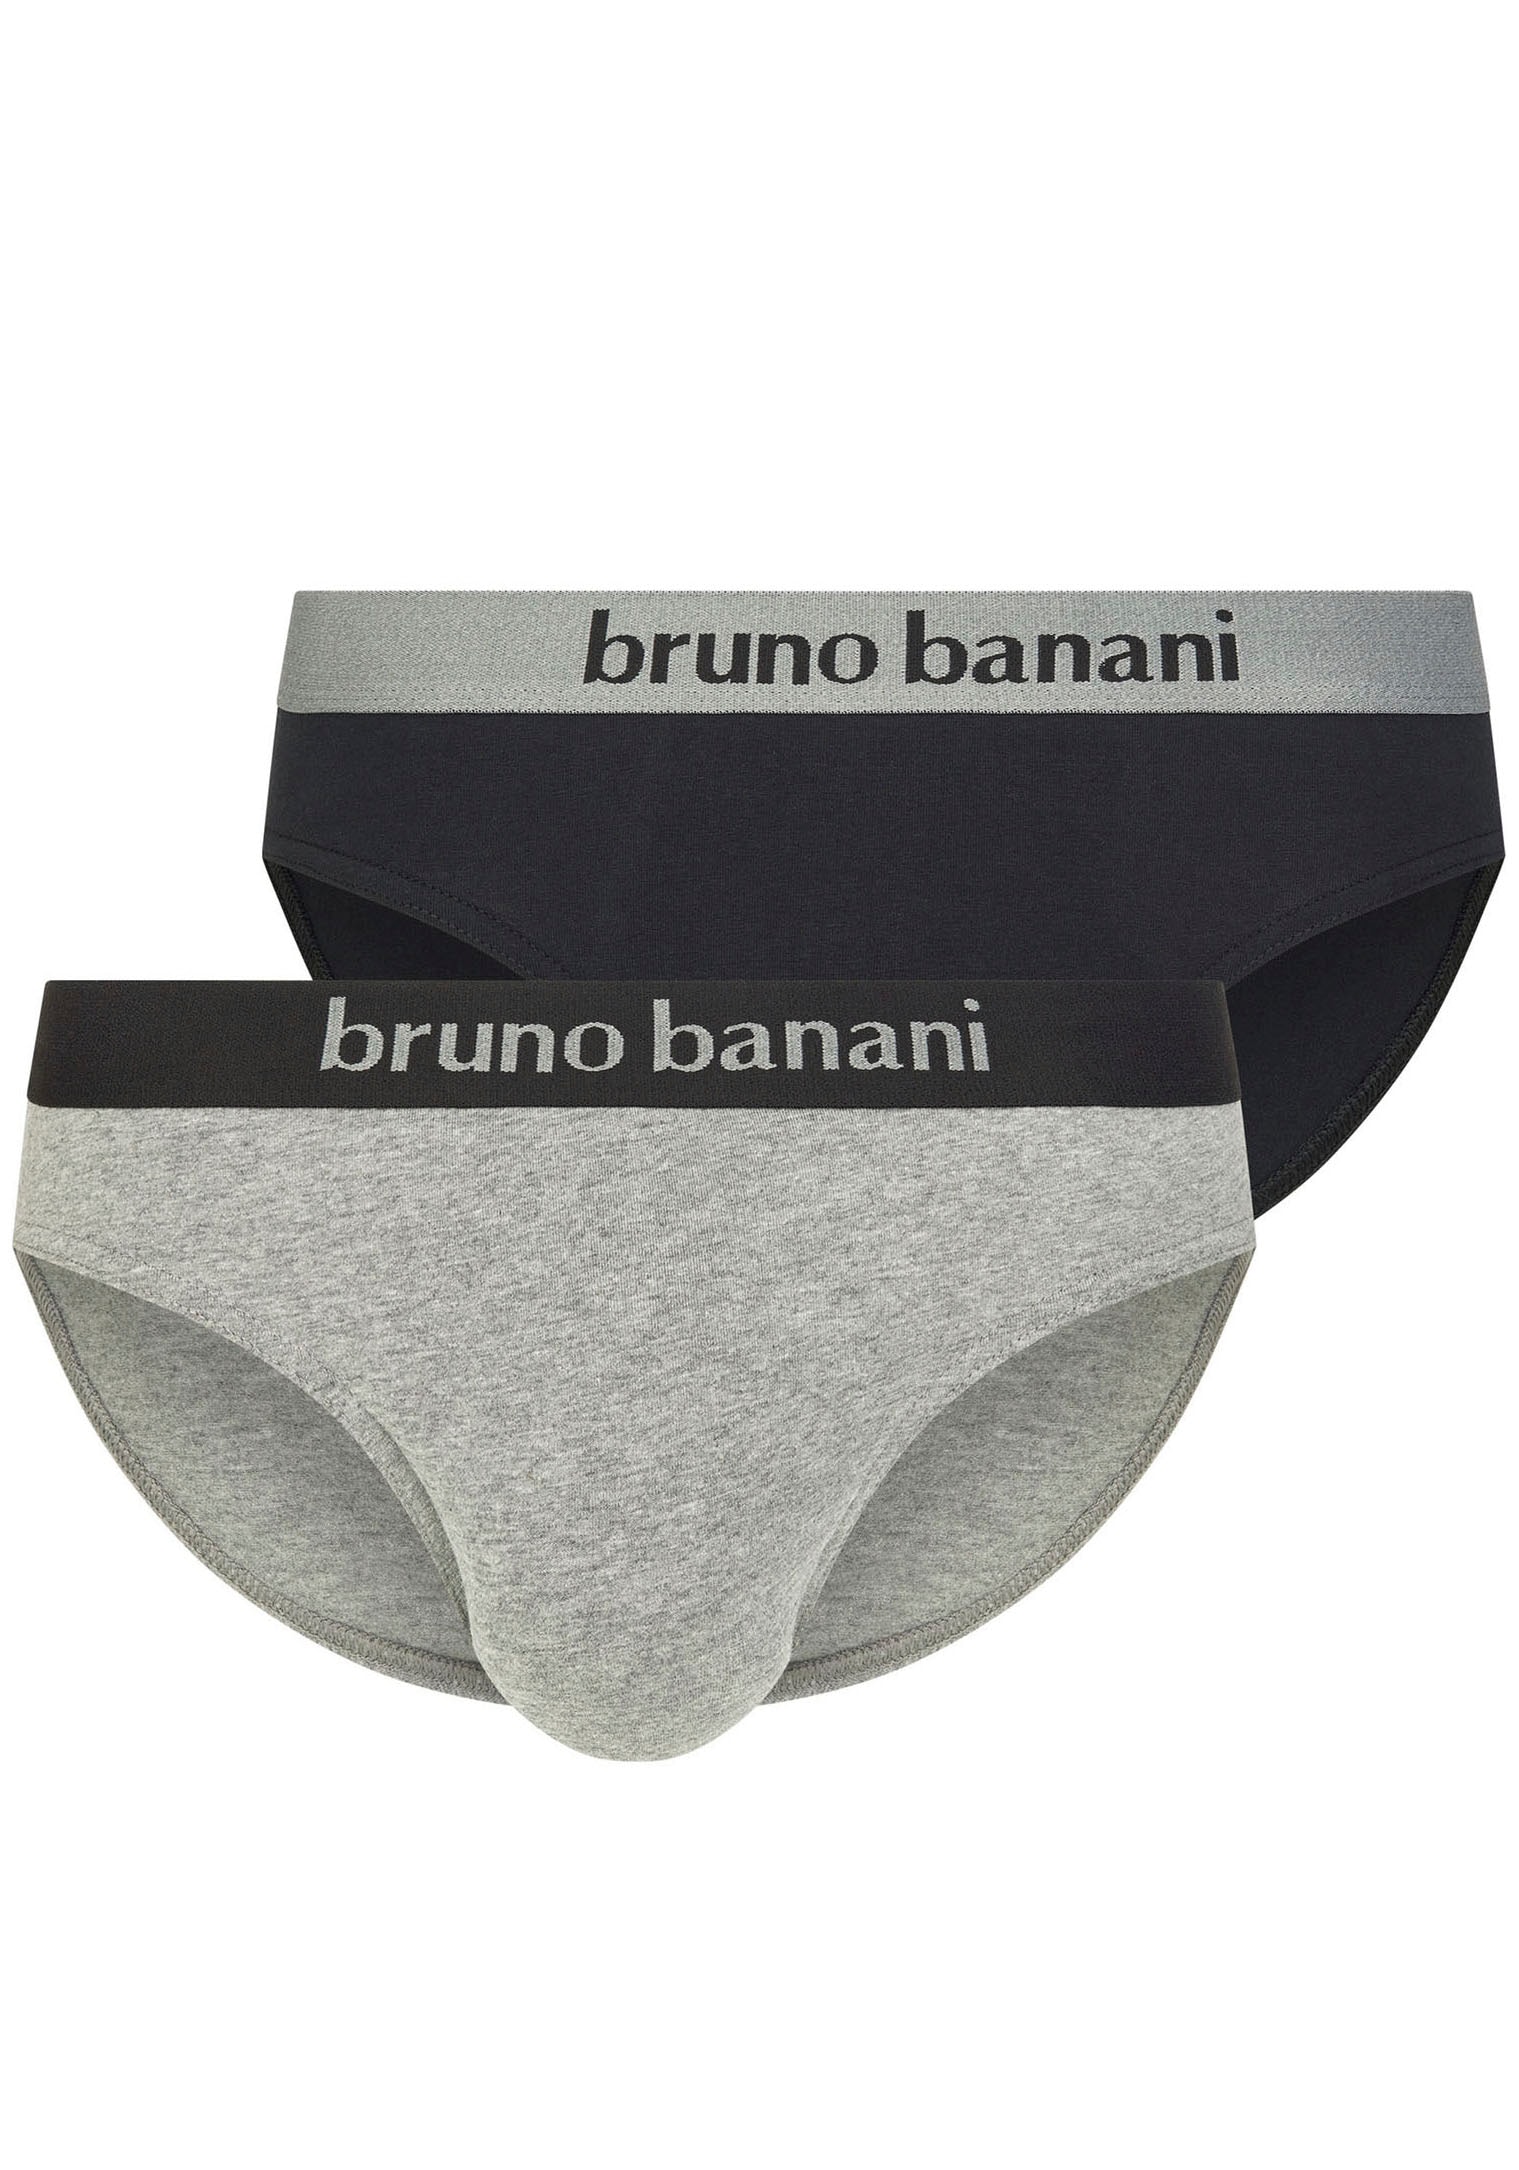 Bruno Banani Kelnaitės »Flowing« (Packung 2 St.)